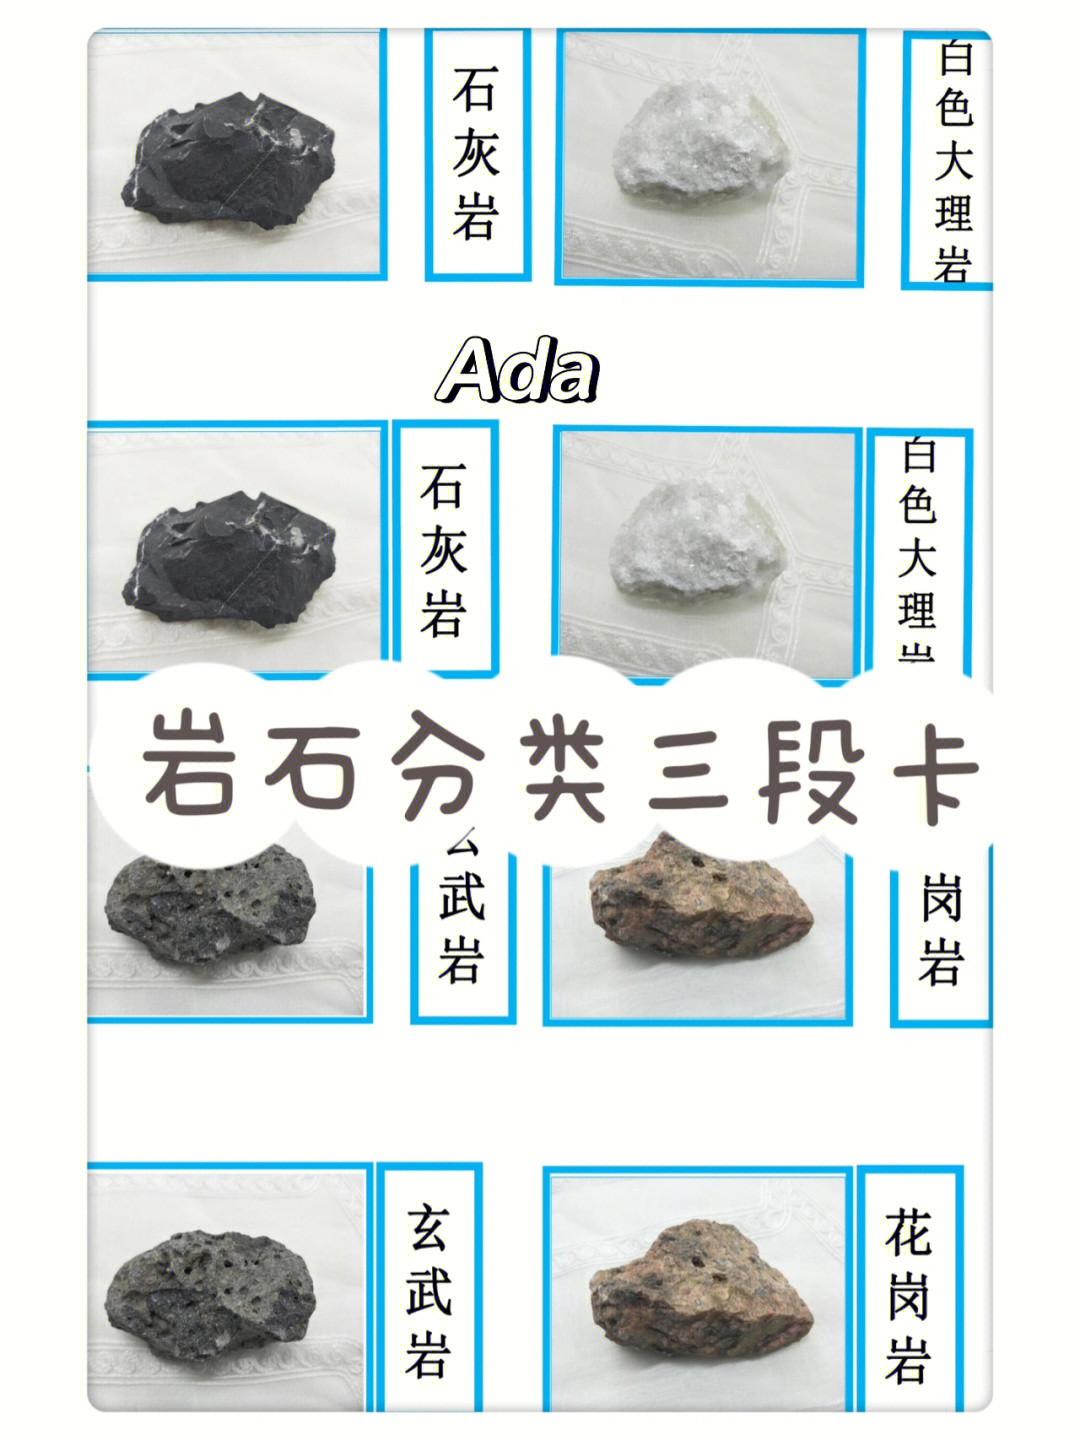 石头分类图片介绍图片